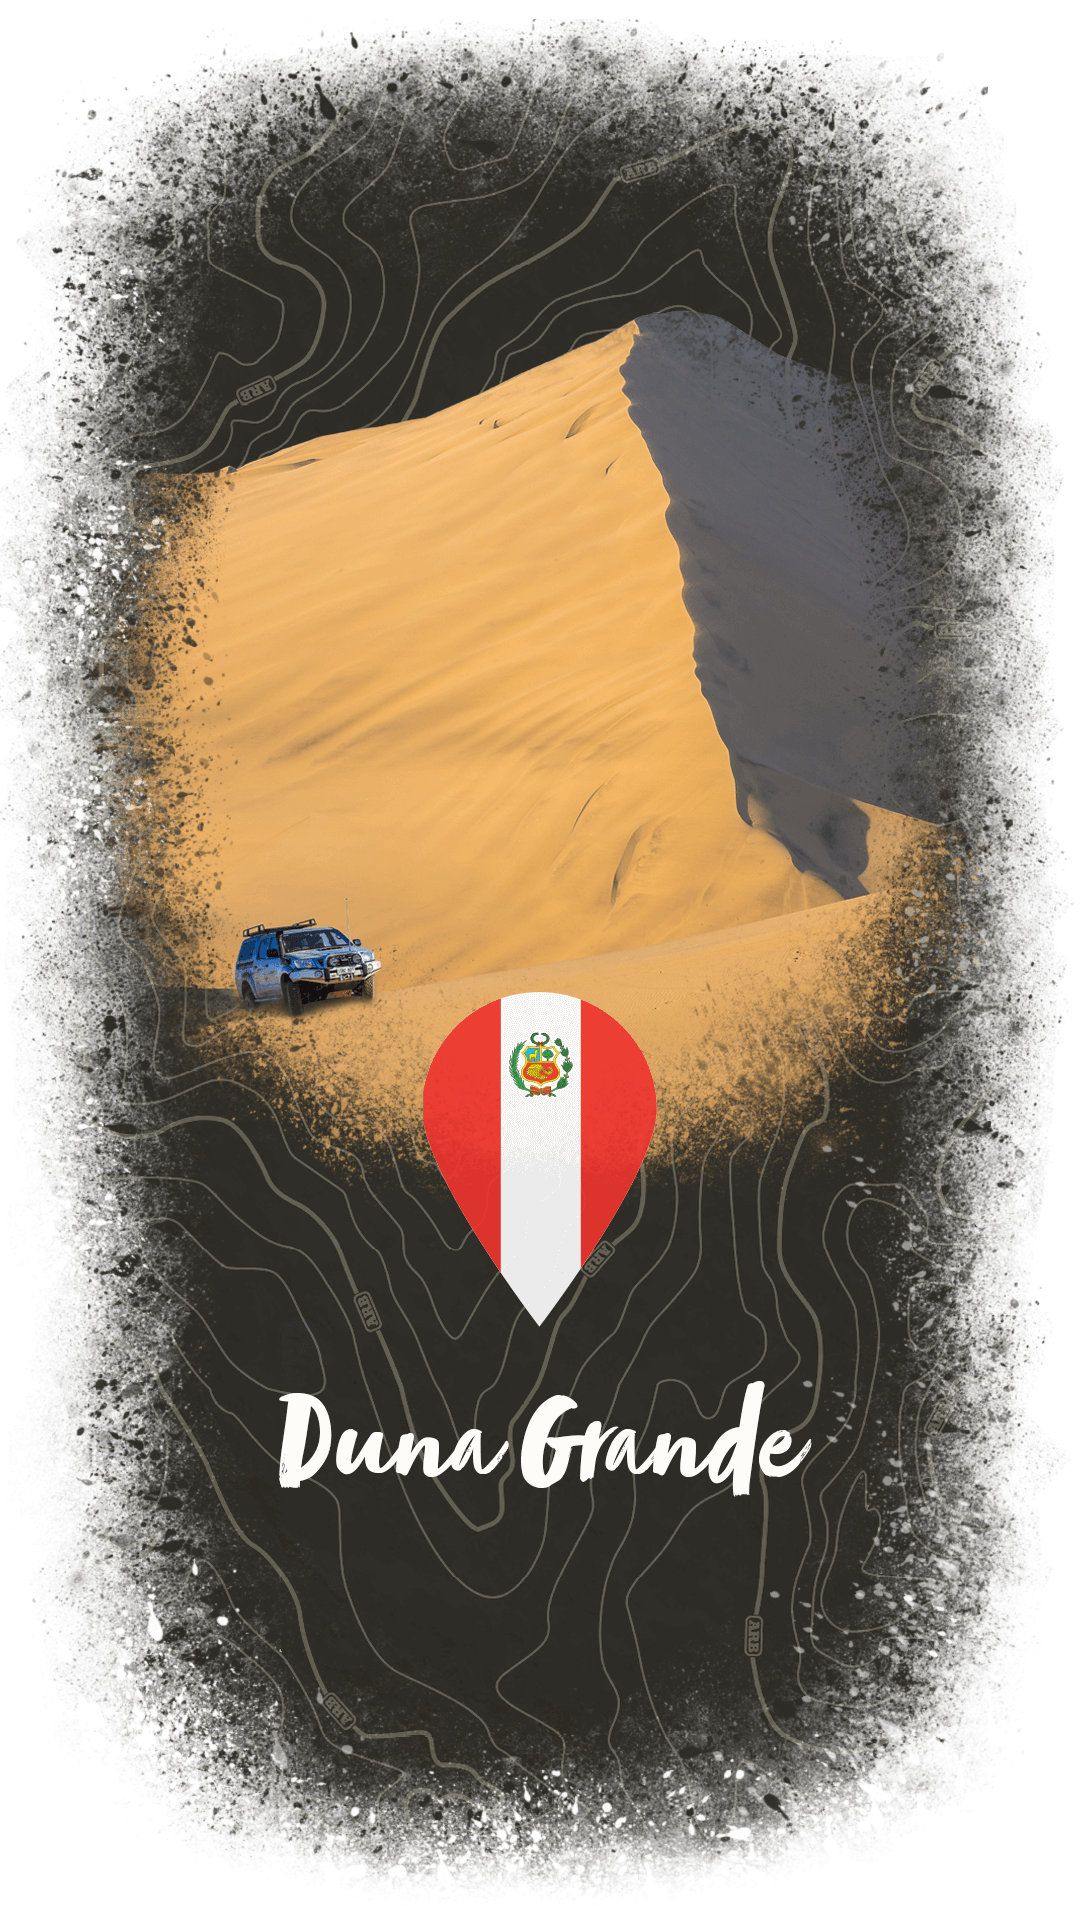 Duna Grande Peru 4x4